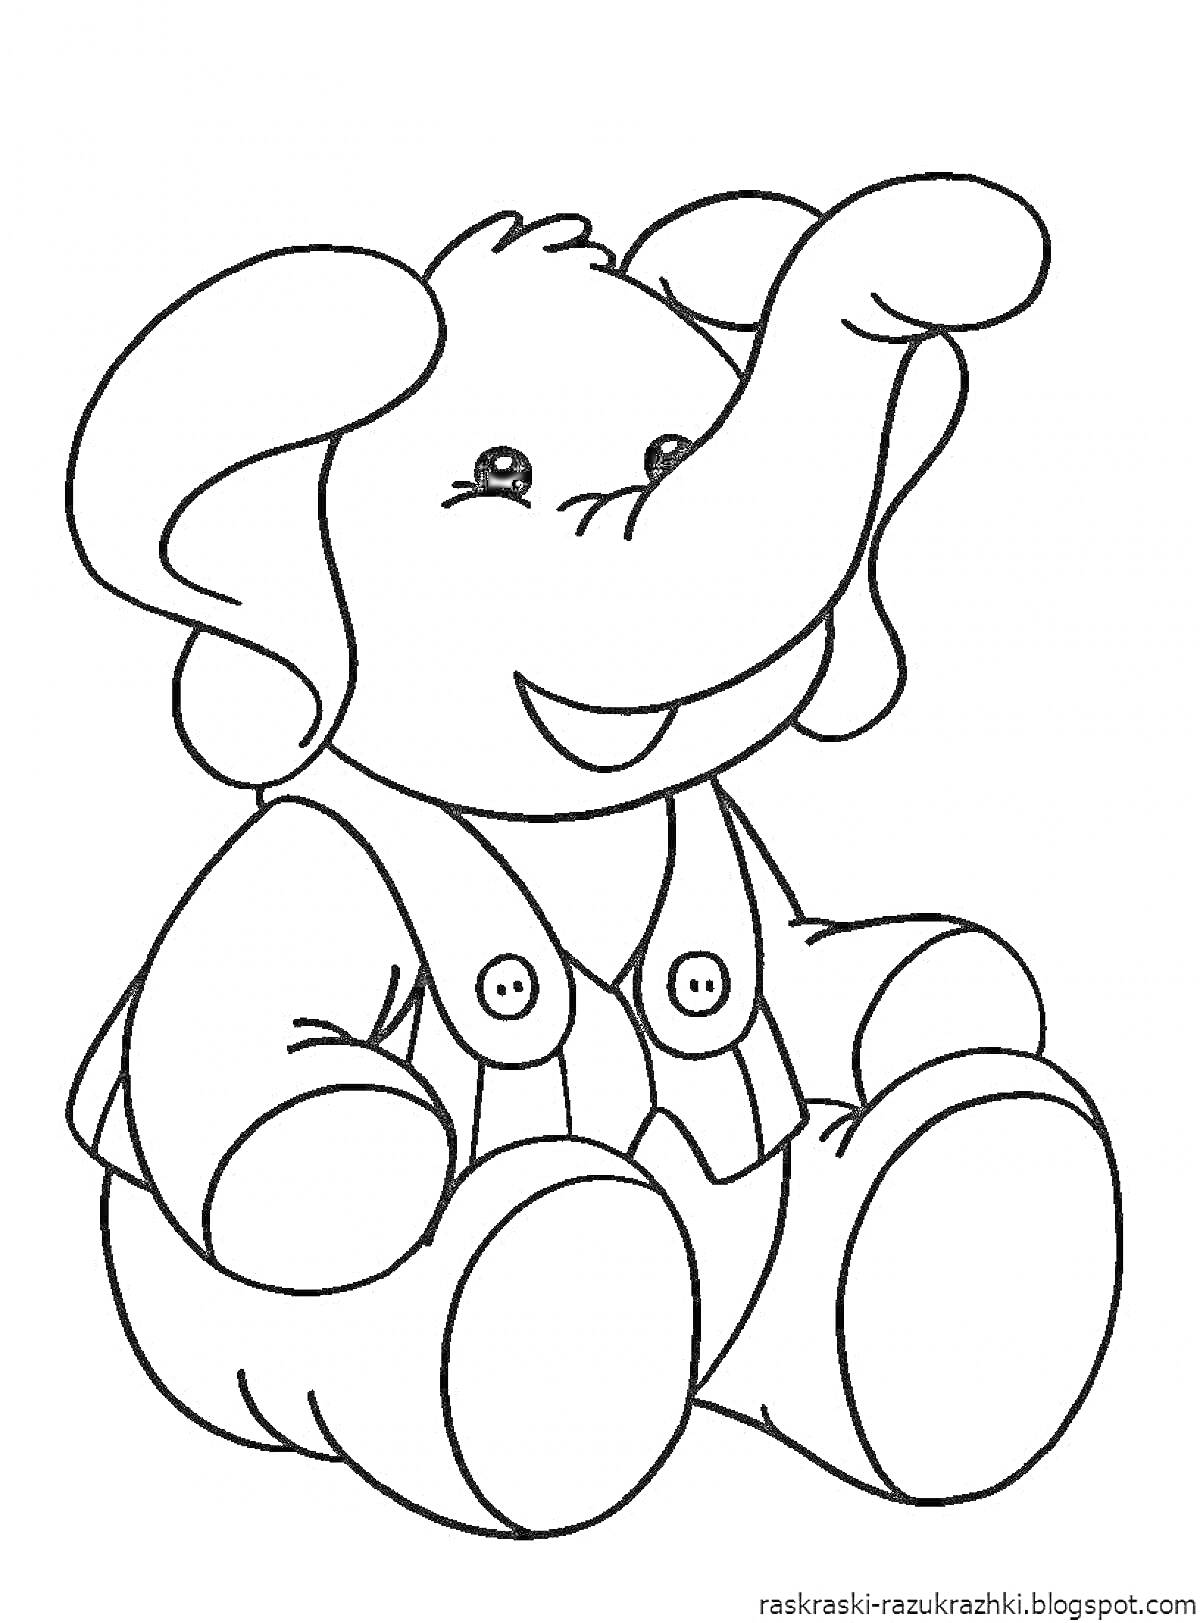 Раскраска Плюшевый слоненок в комбинезоне с пуговицами